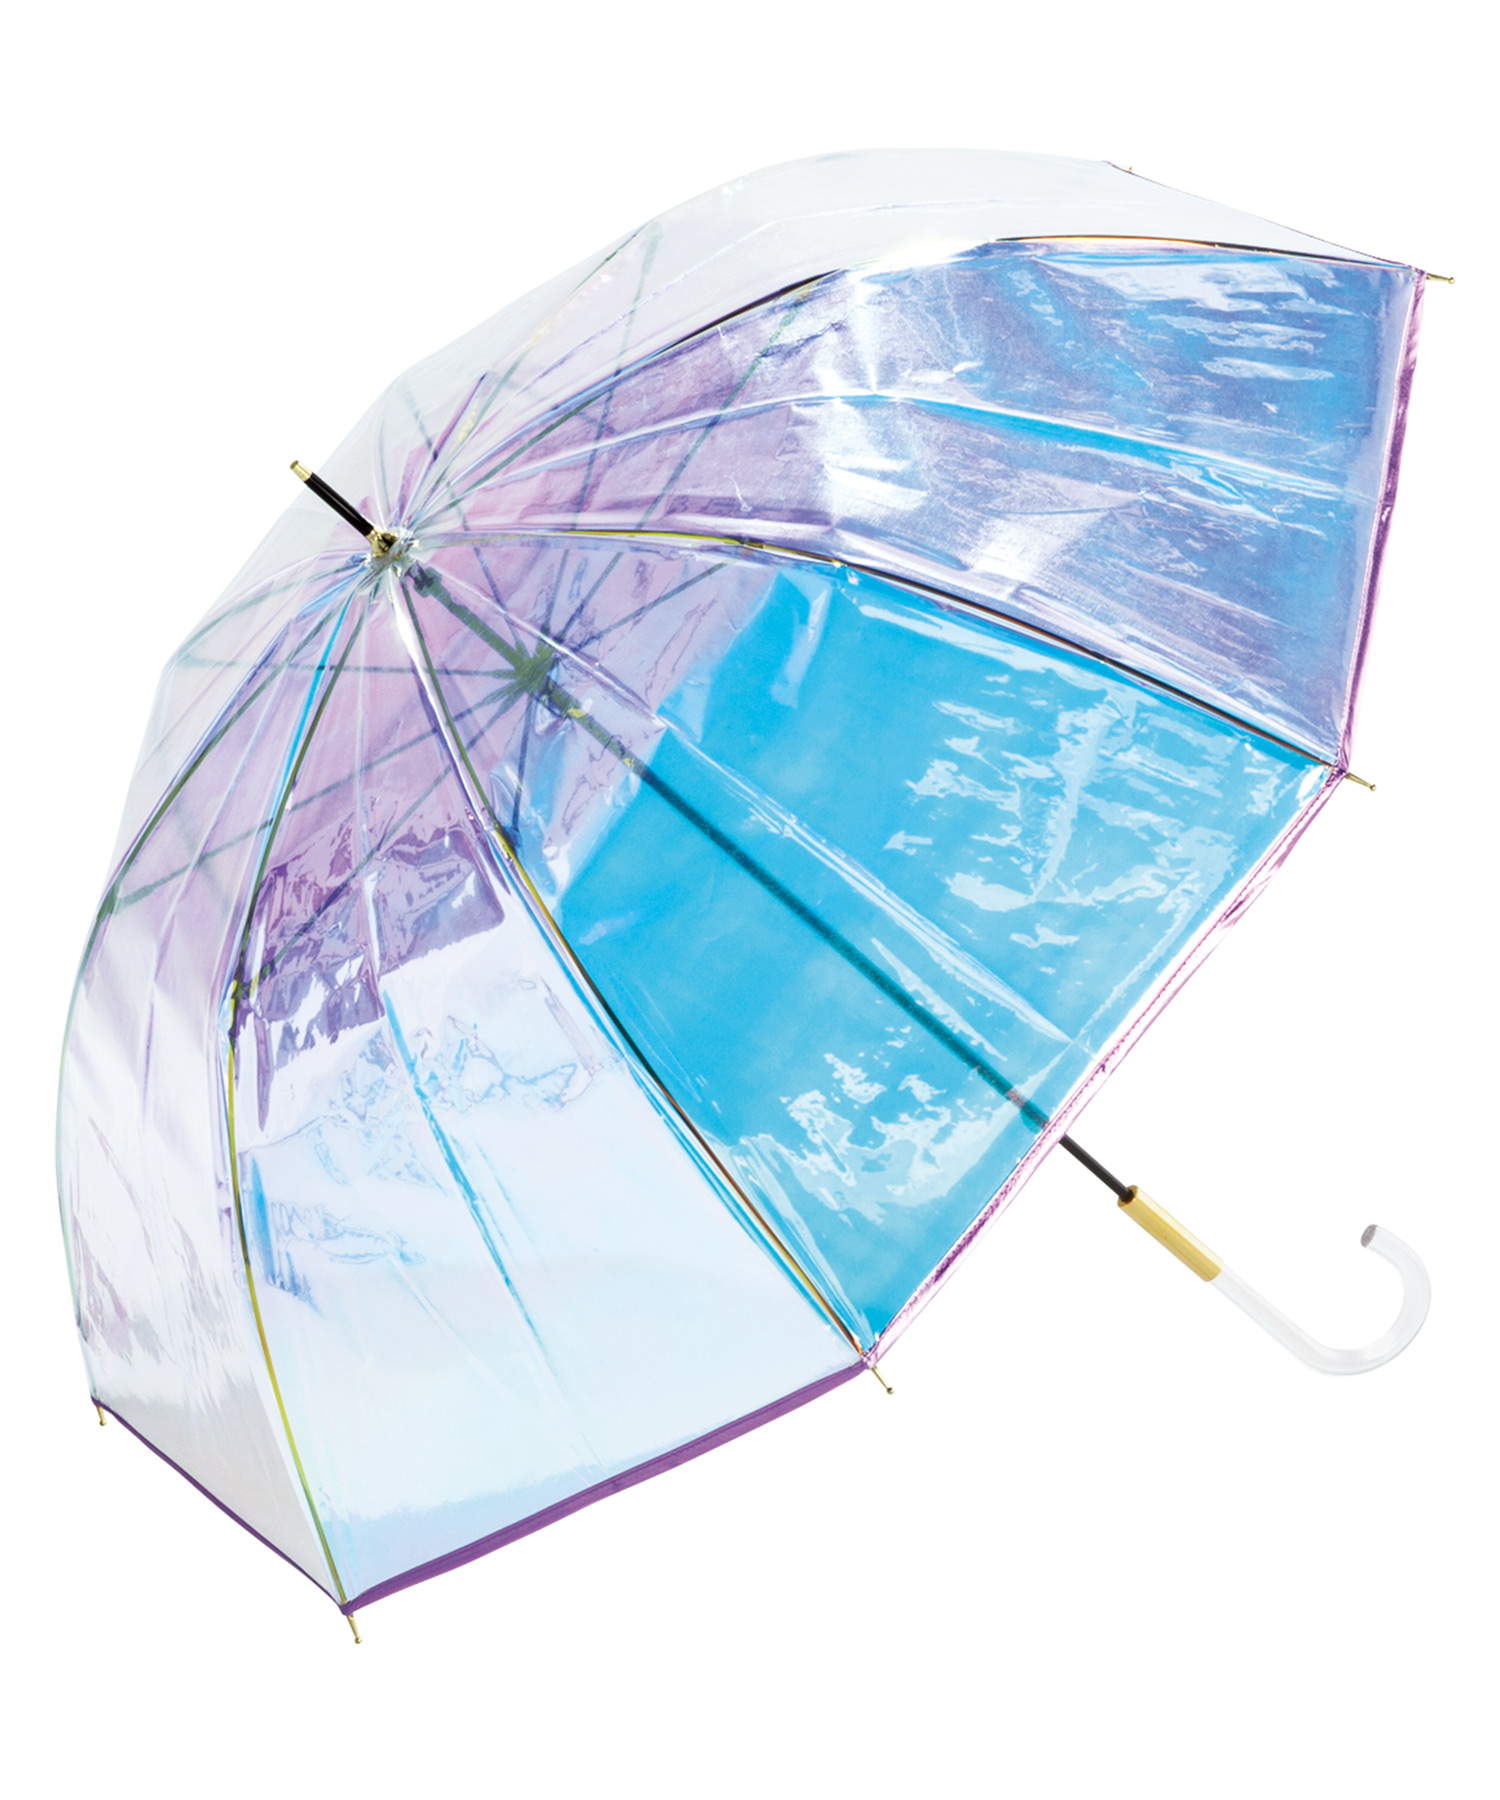 ビニール傘 パイピング 激安☆超特価 57%OFF シャイニーアンブレラ shiny umbrella plastic ダブリュピーシー Wpc